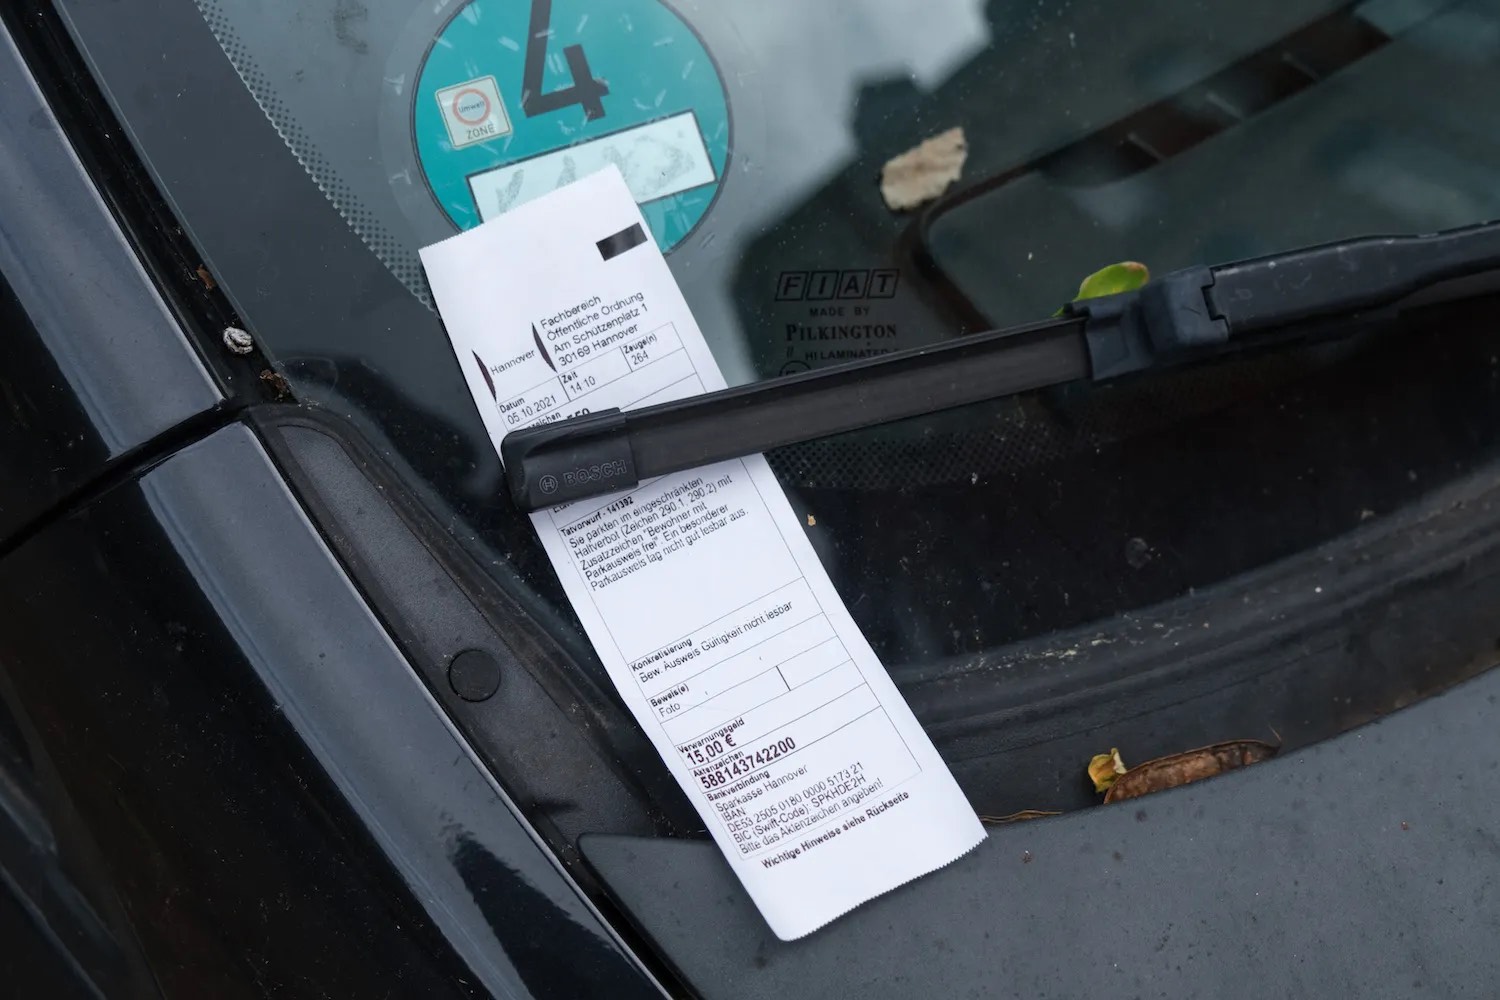 Unpaid parking ticket beneath a windshield wiper.